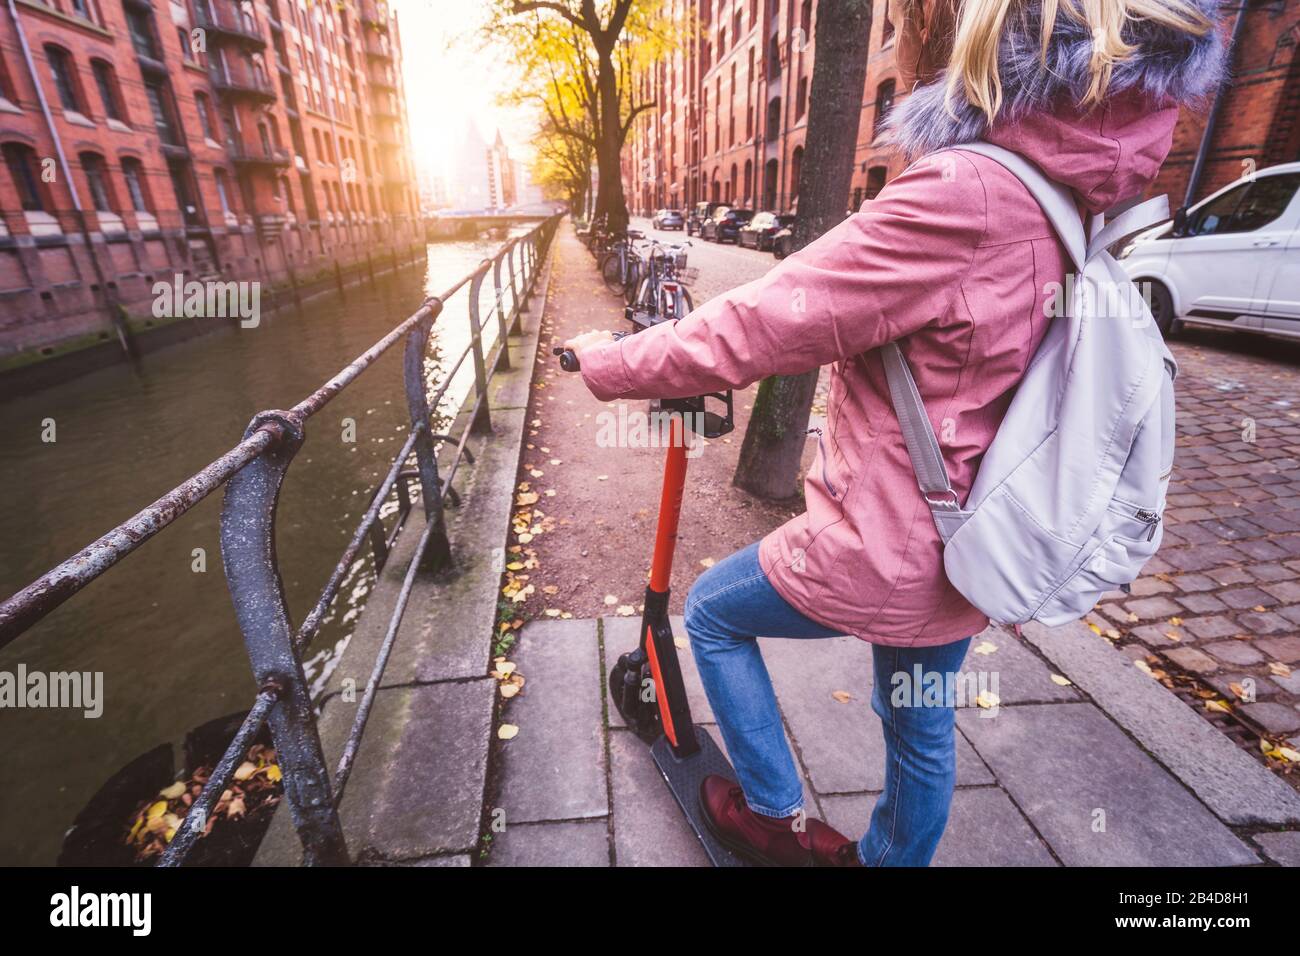 Rückenansicht einer Frau mit Rucksack und E-Roller, Blick auf die historische Speicherstadt in Hamburg im warmen Licht des Sonnenuntergangs, Deutschla Stock Photo